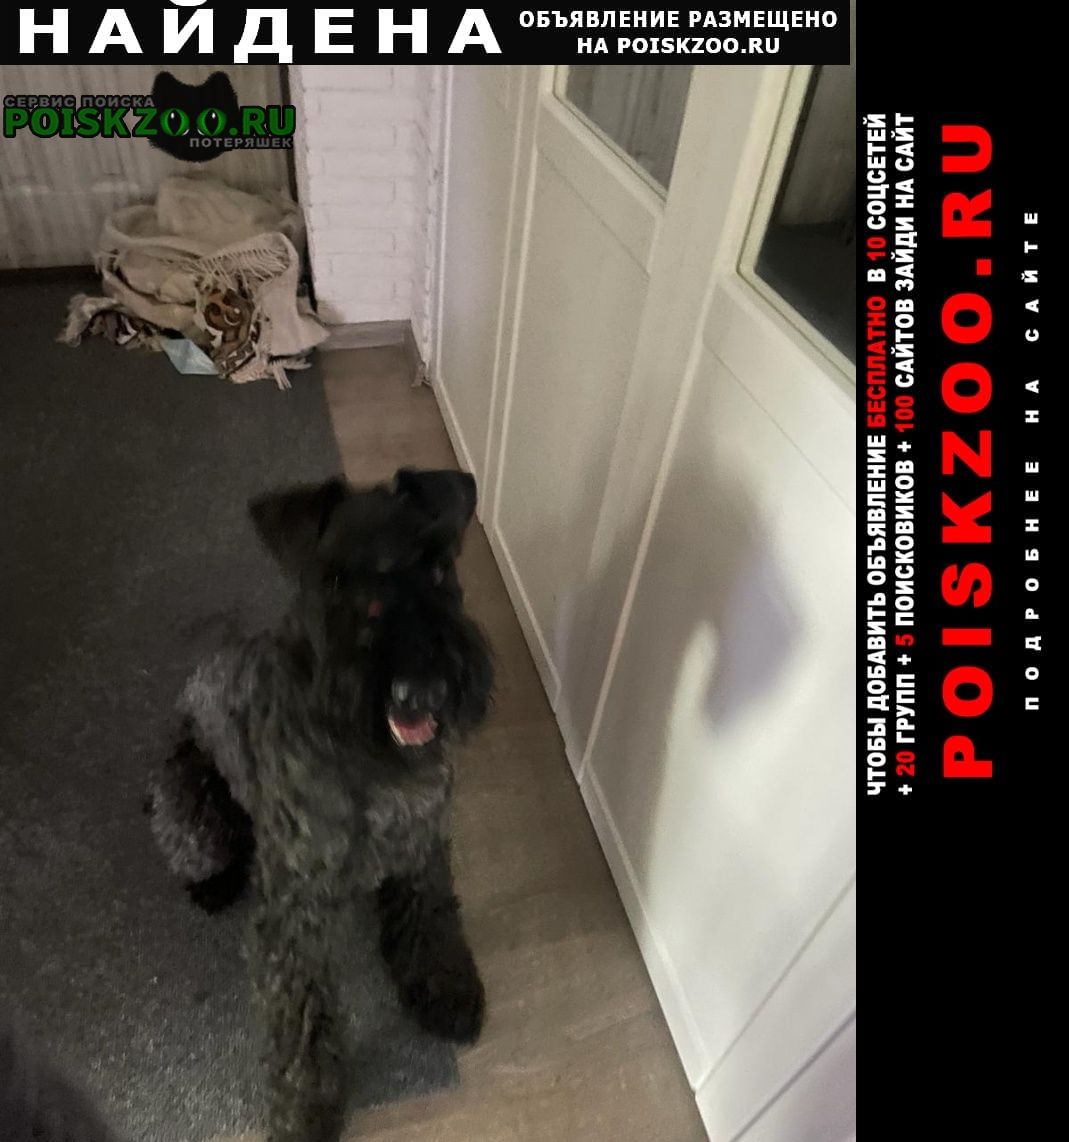 Найдена собака кобель керри блю терьер Москва